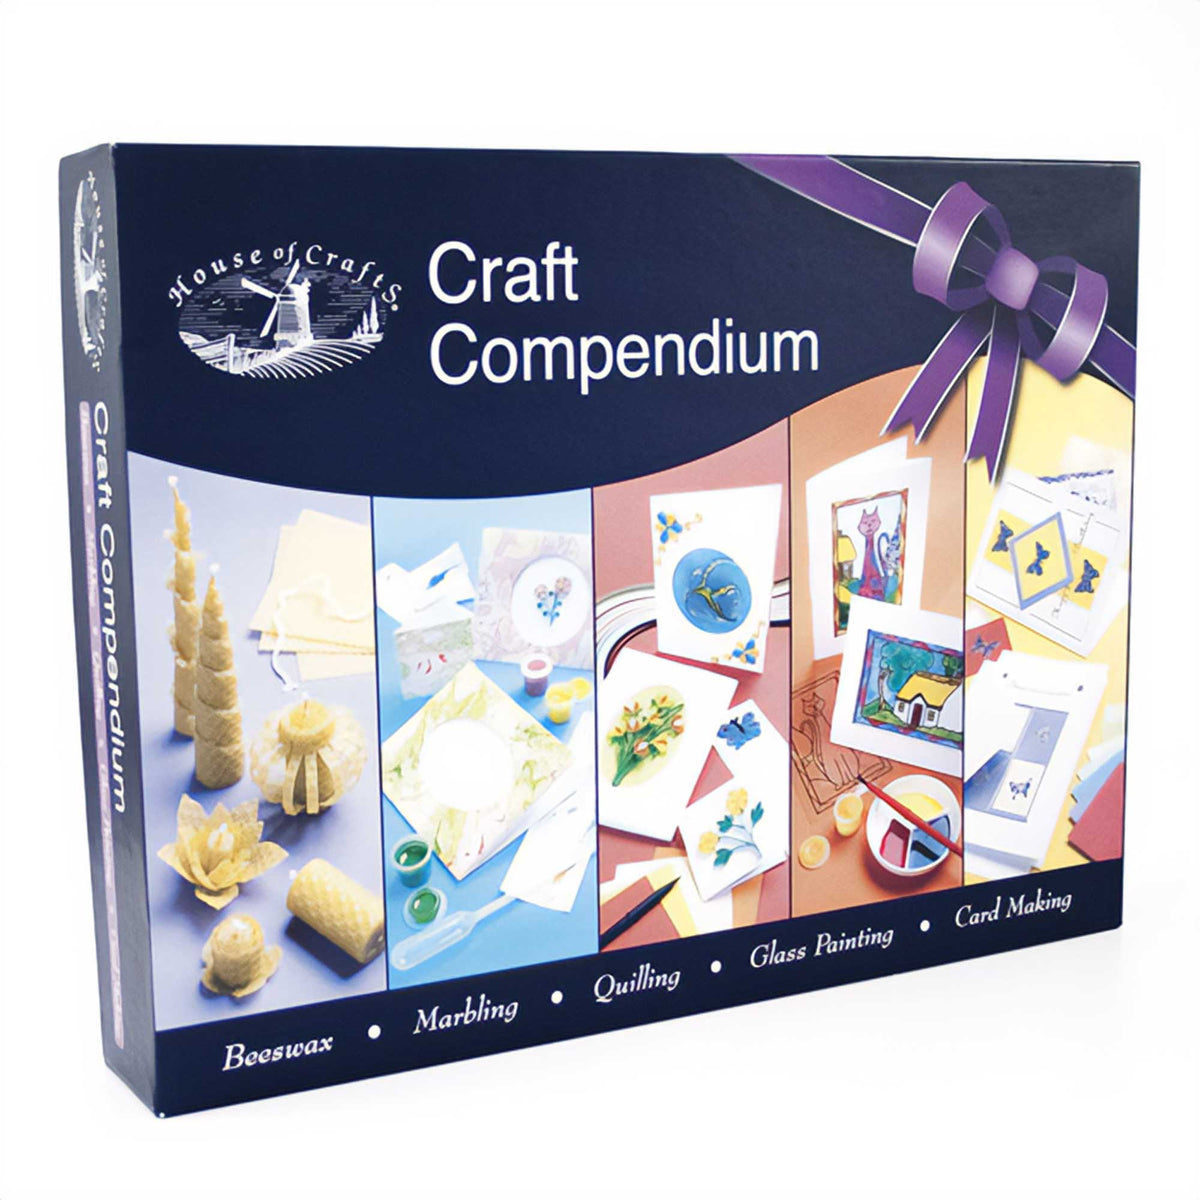 House of Crafts - Craft Compendium Box